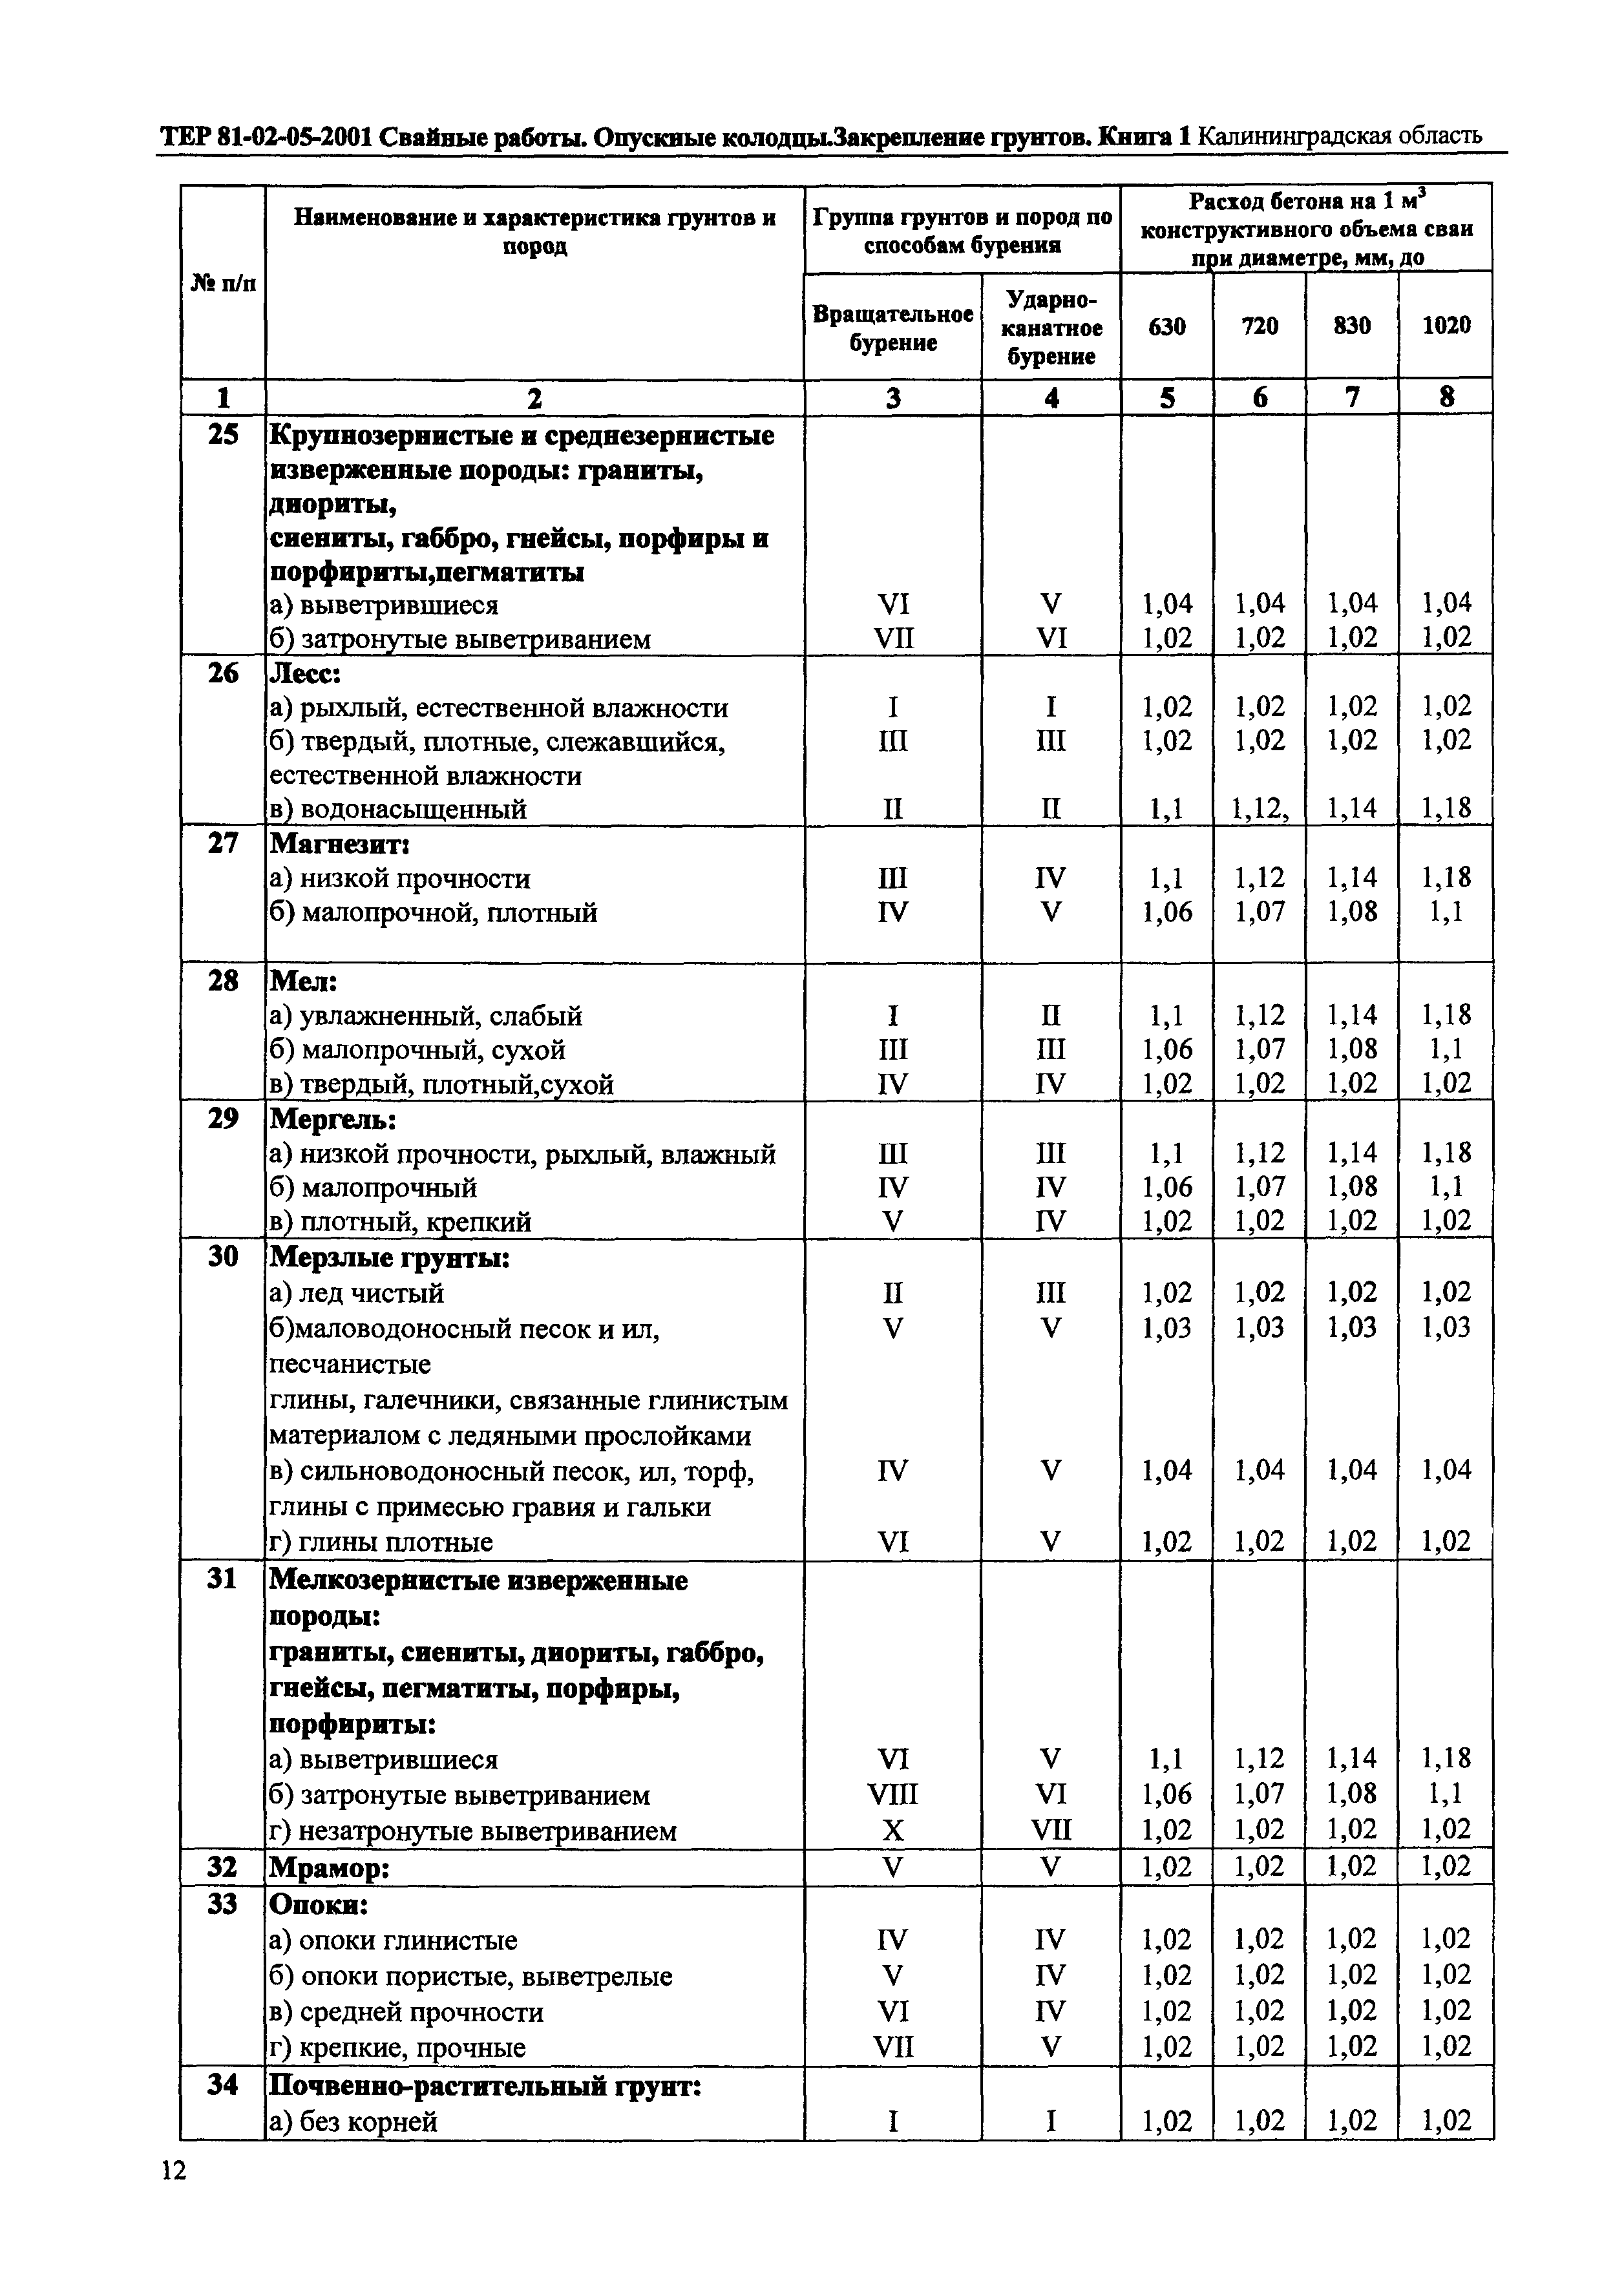 ТЕР Калининградская область 2001-05